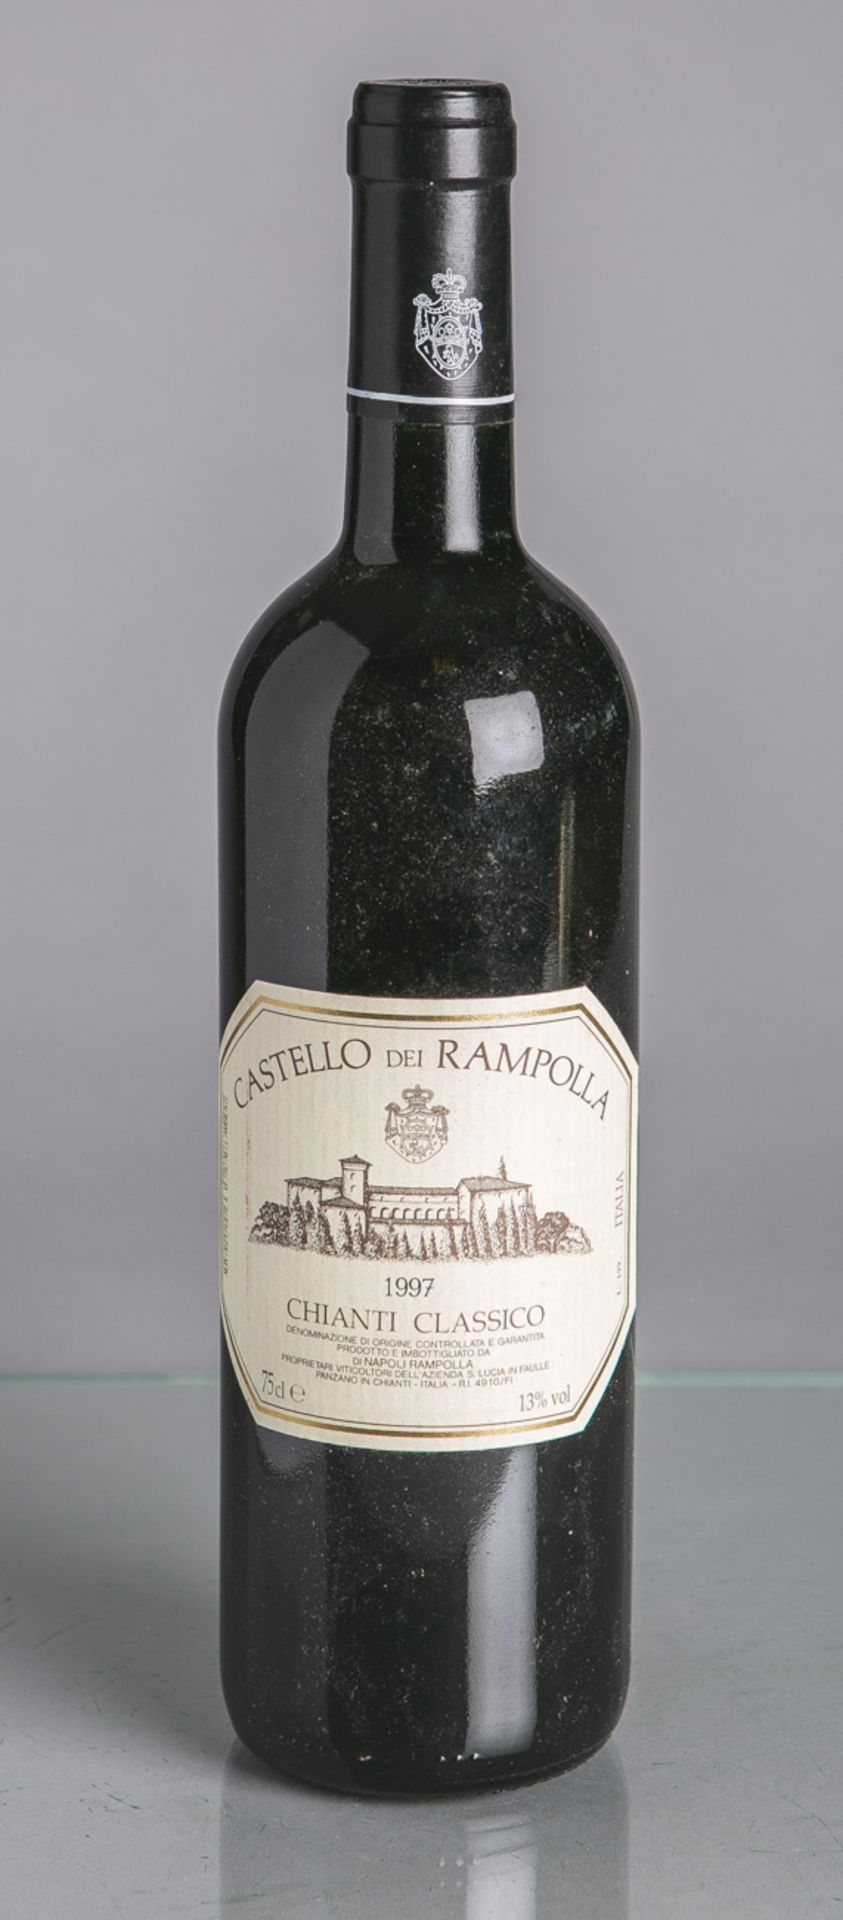 5 Flaschen von Castello del Rampolla, Chianti Classico, Reserva (1997), Rotwein, je 0,75L. Im